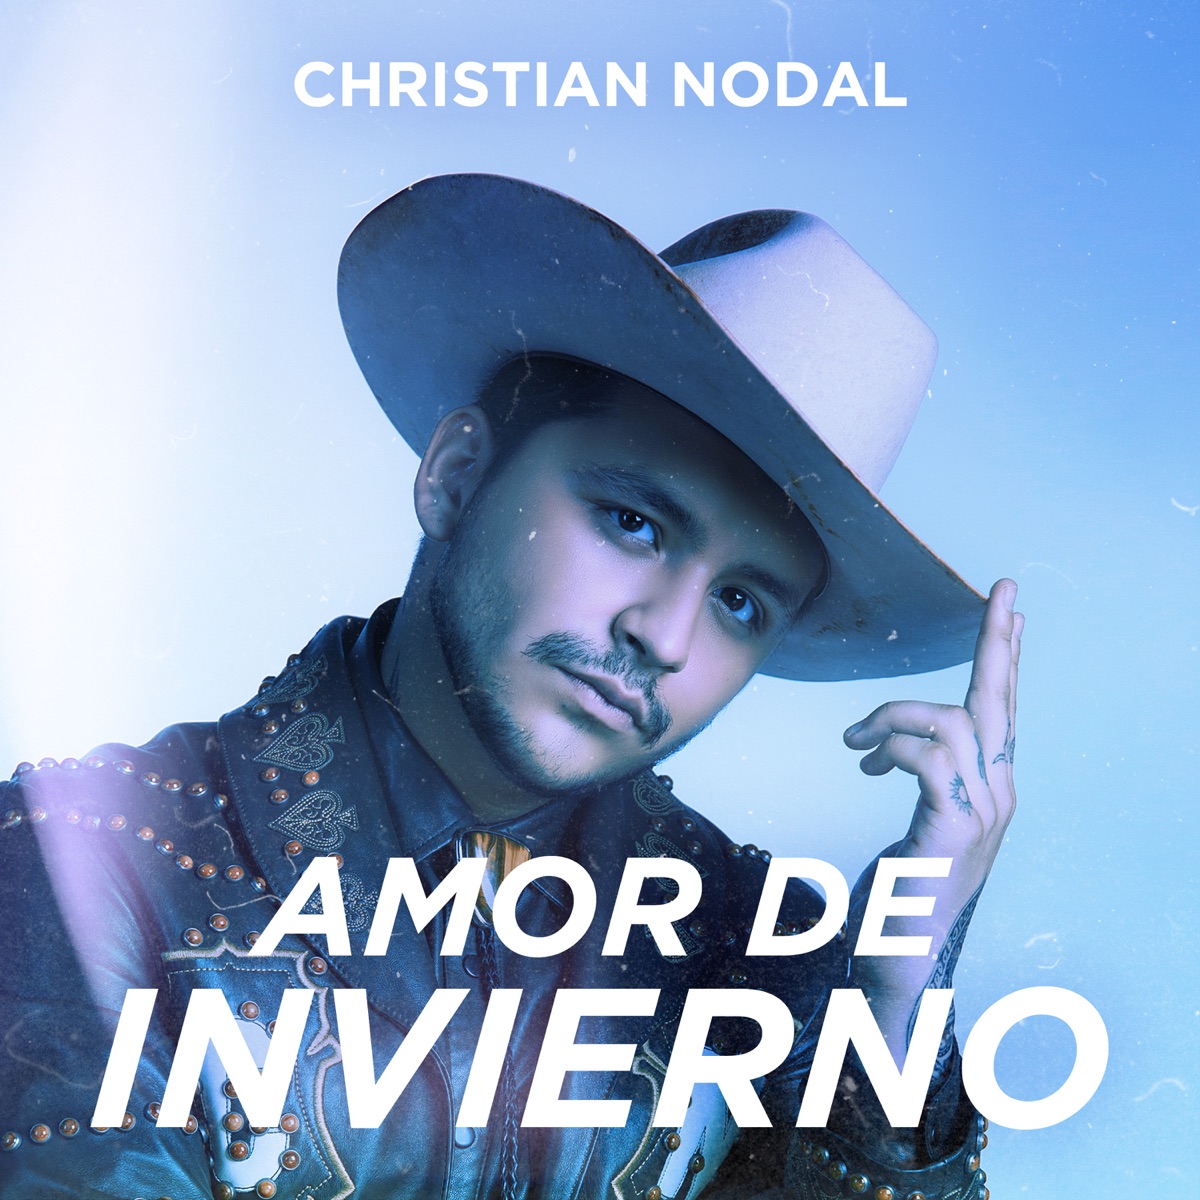 Adiós Amor - Single by Christian Nodal on Apple Music